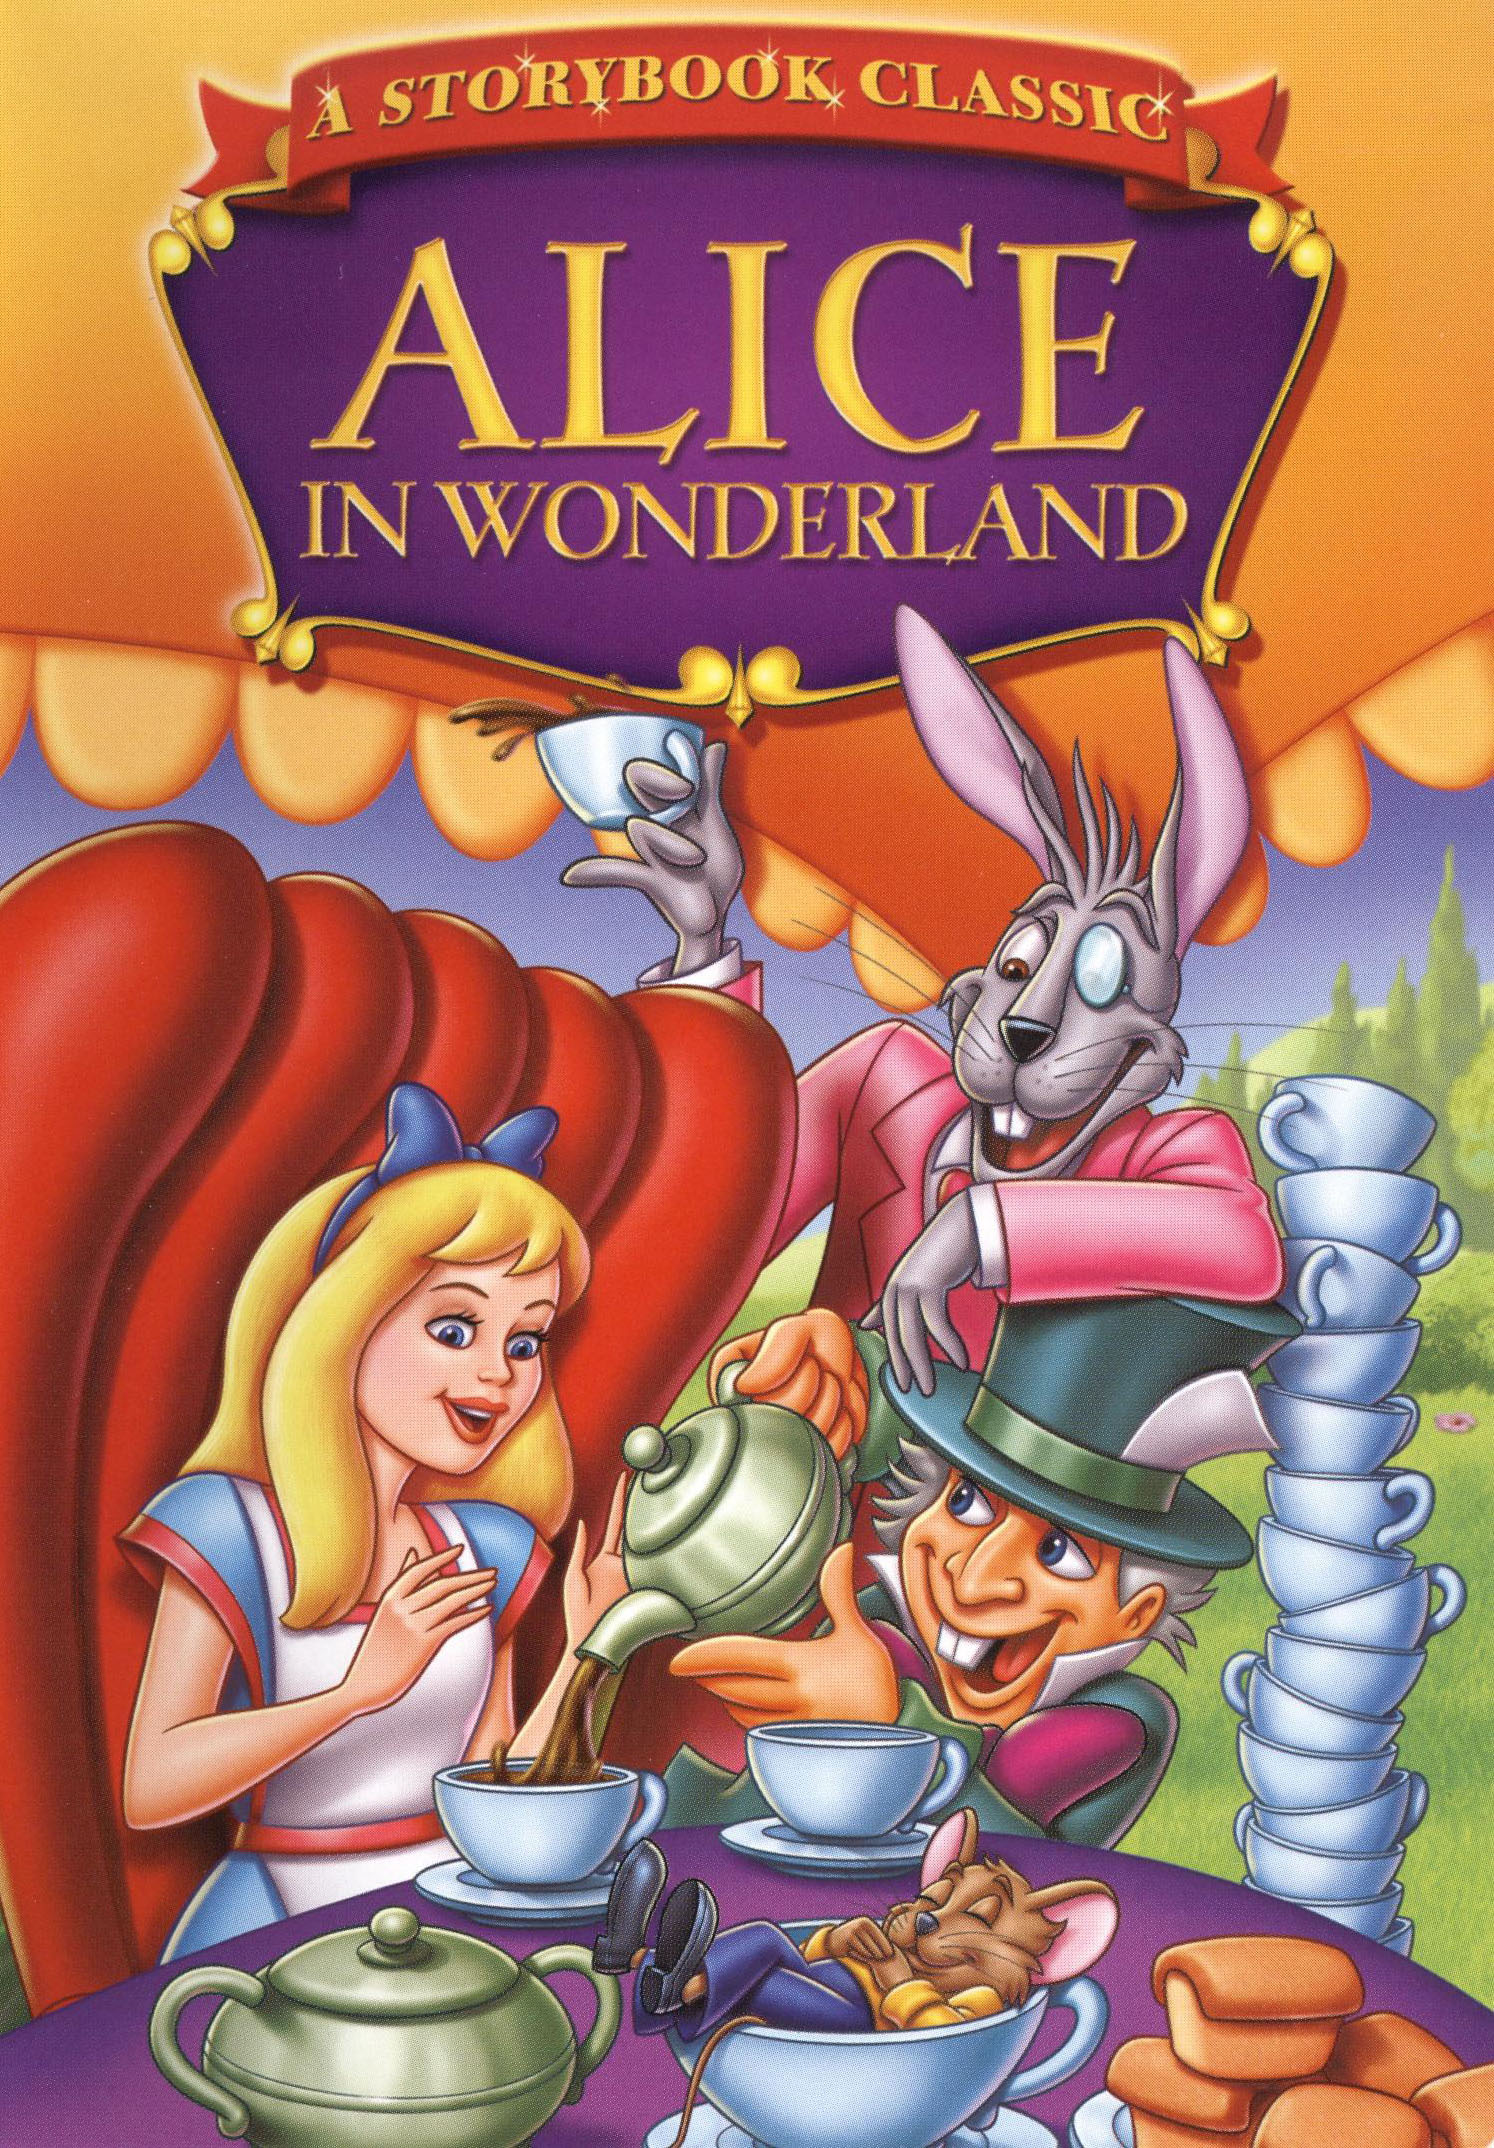 Classic Alice